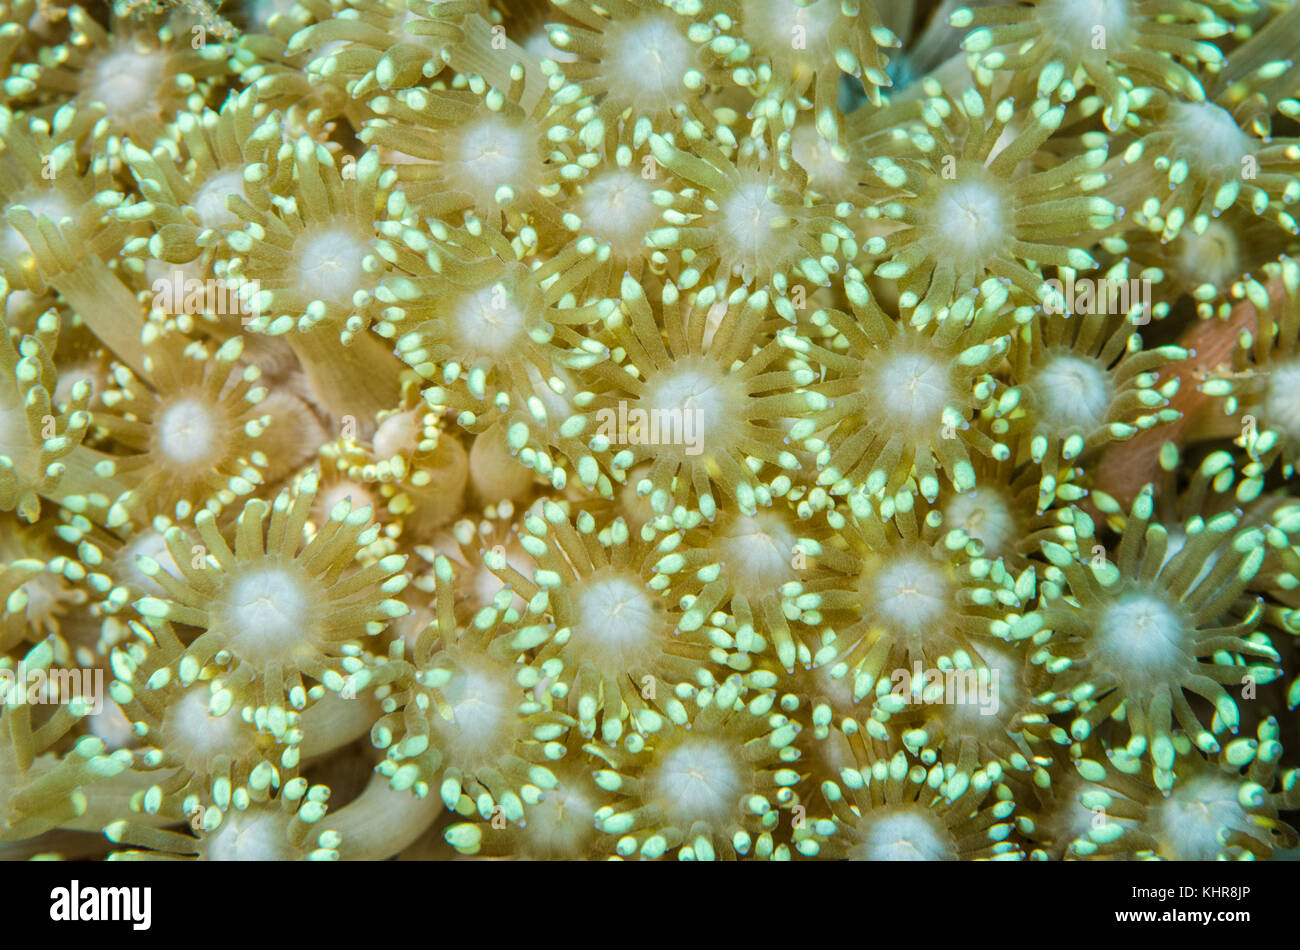 Pólipo coralino, Raja Ampat islas, Indonesia Foto de stock